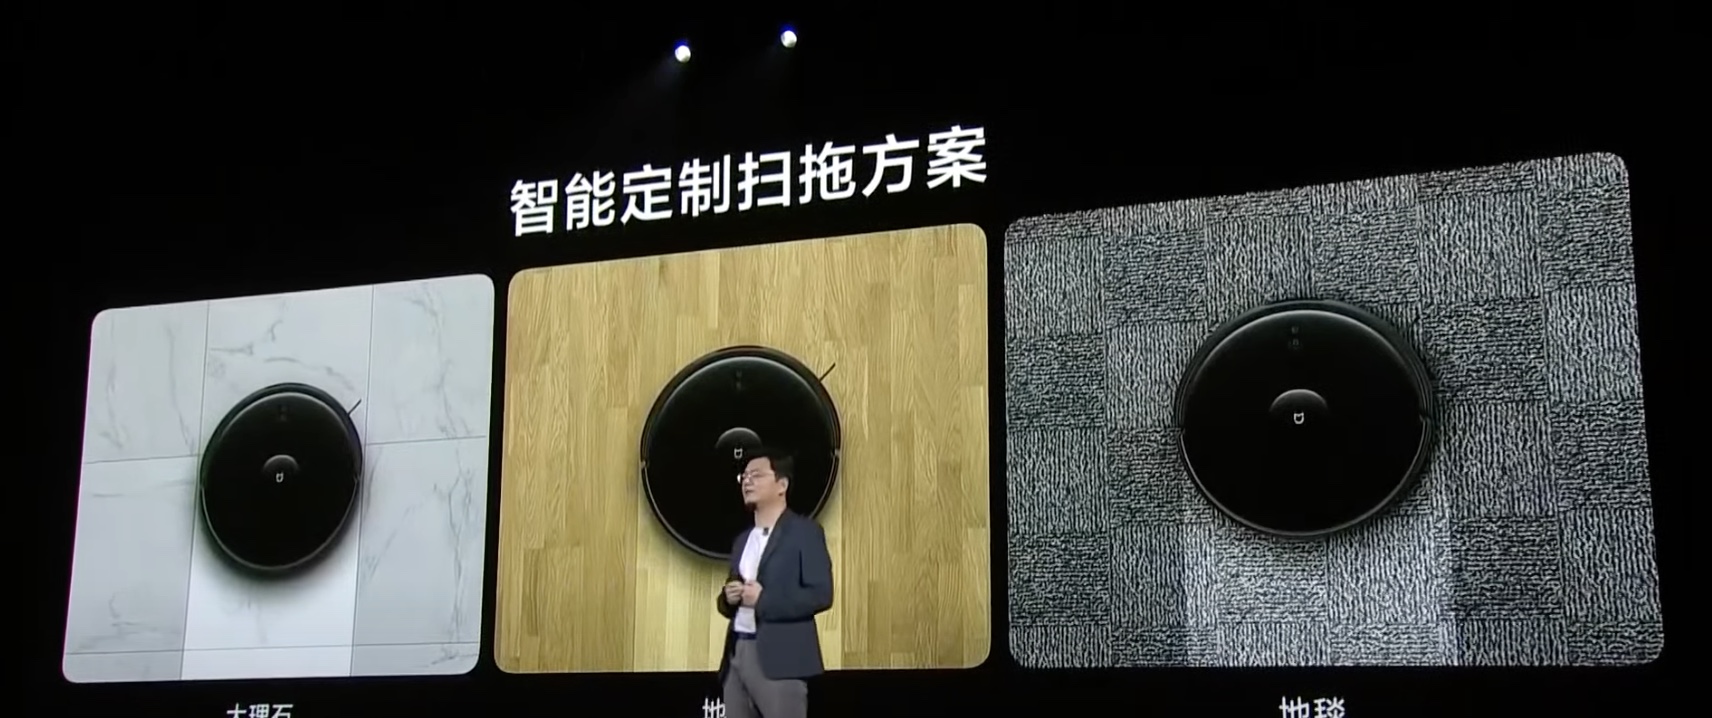 Xiaomi Mi Robot Vacuum Pro 